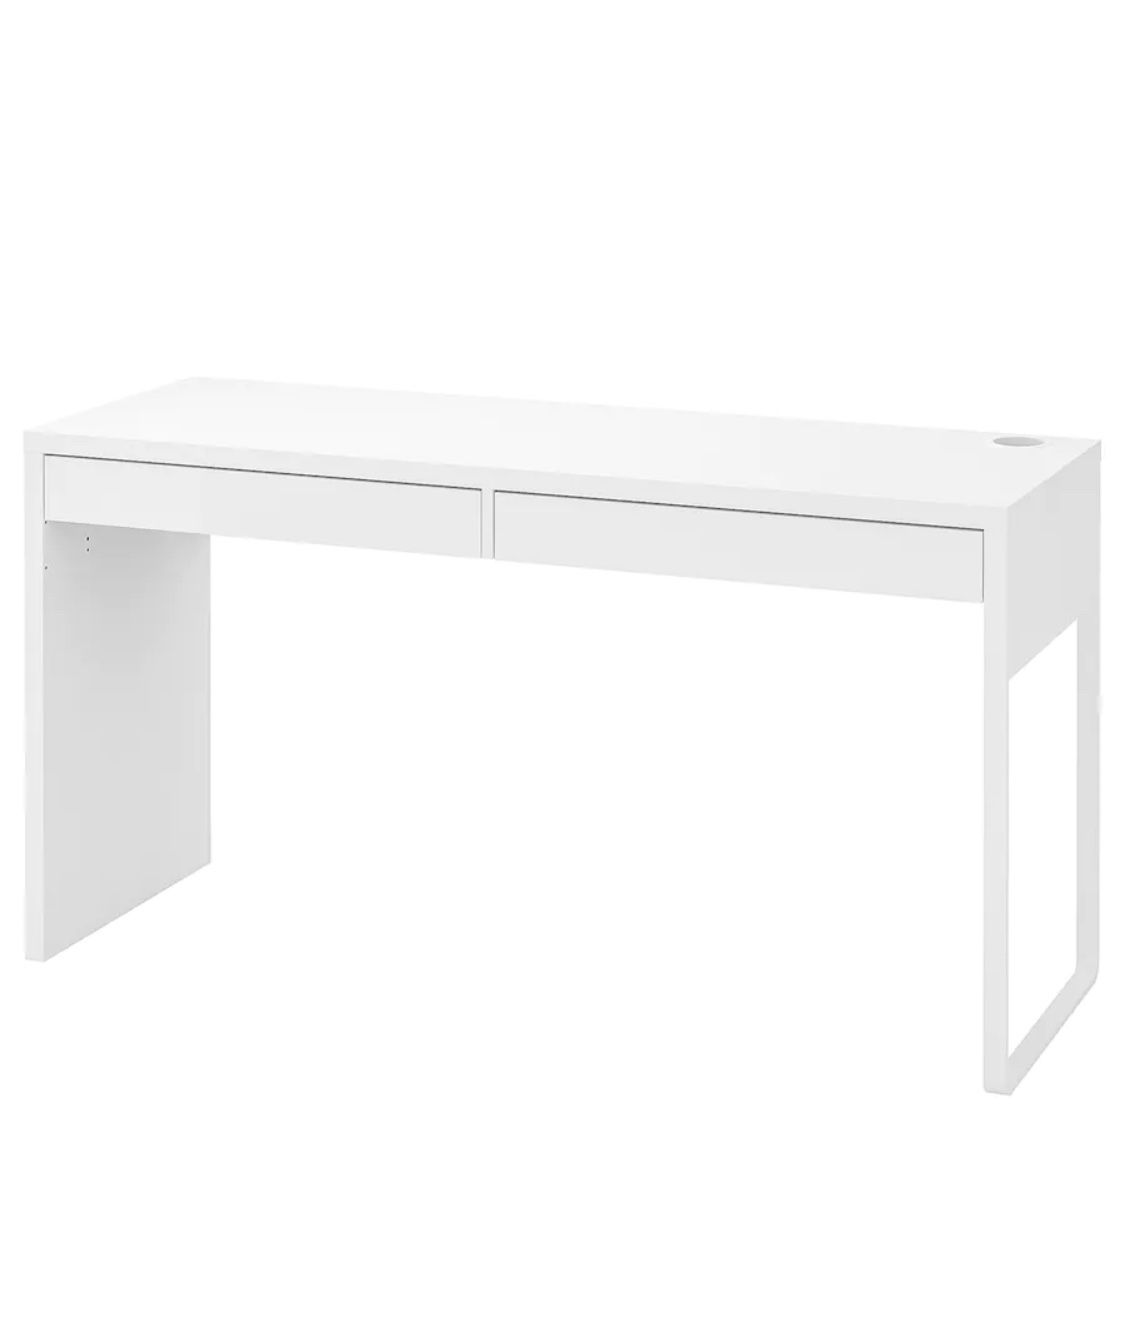 MICKE IKEA Desk For Sale